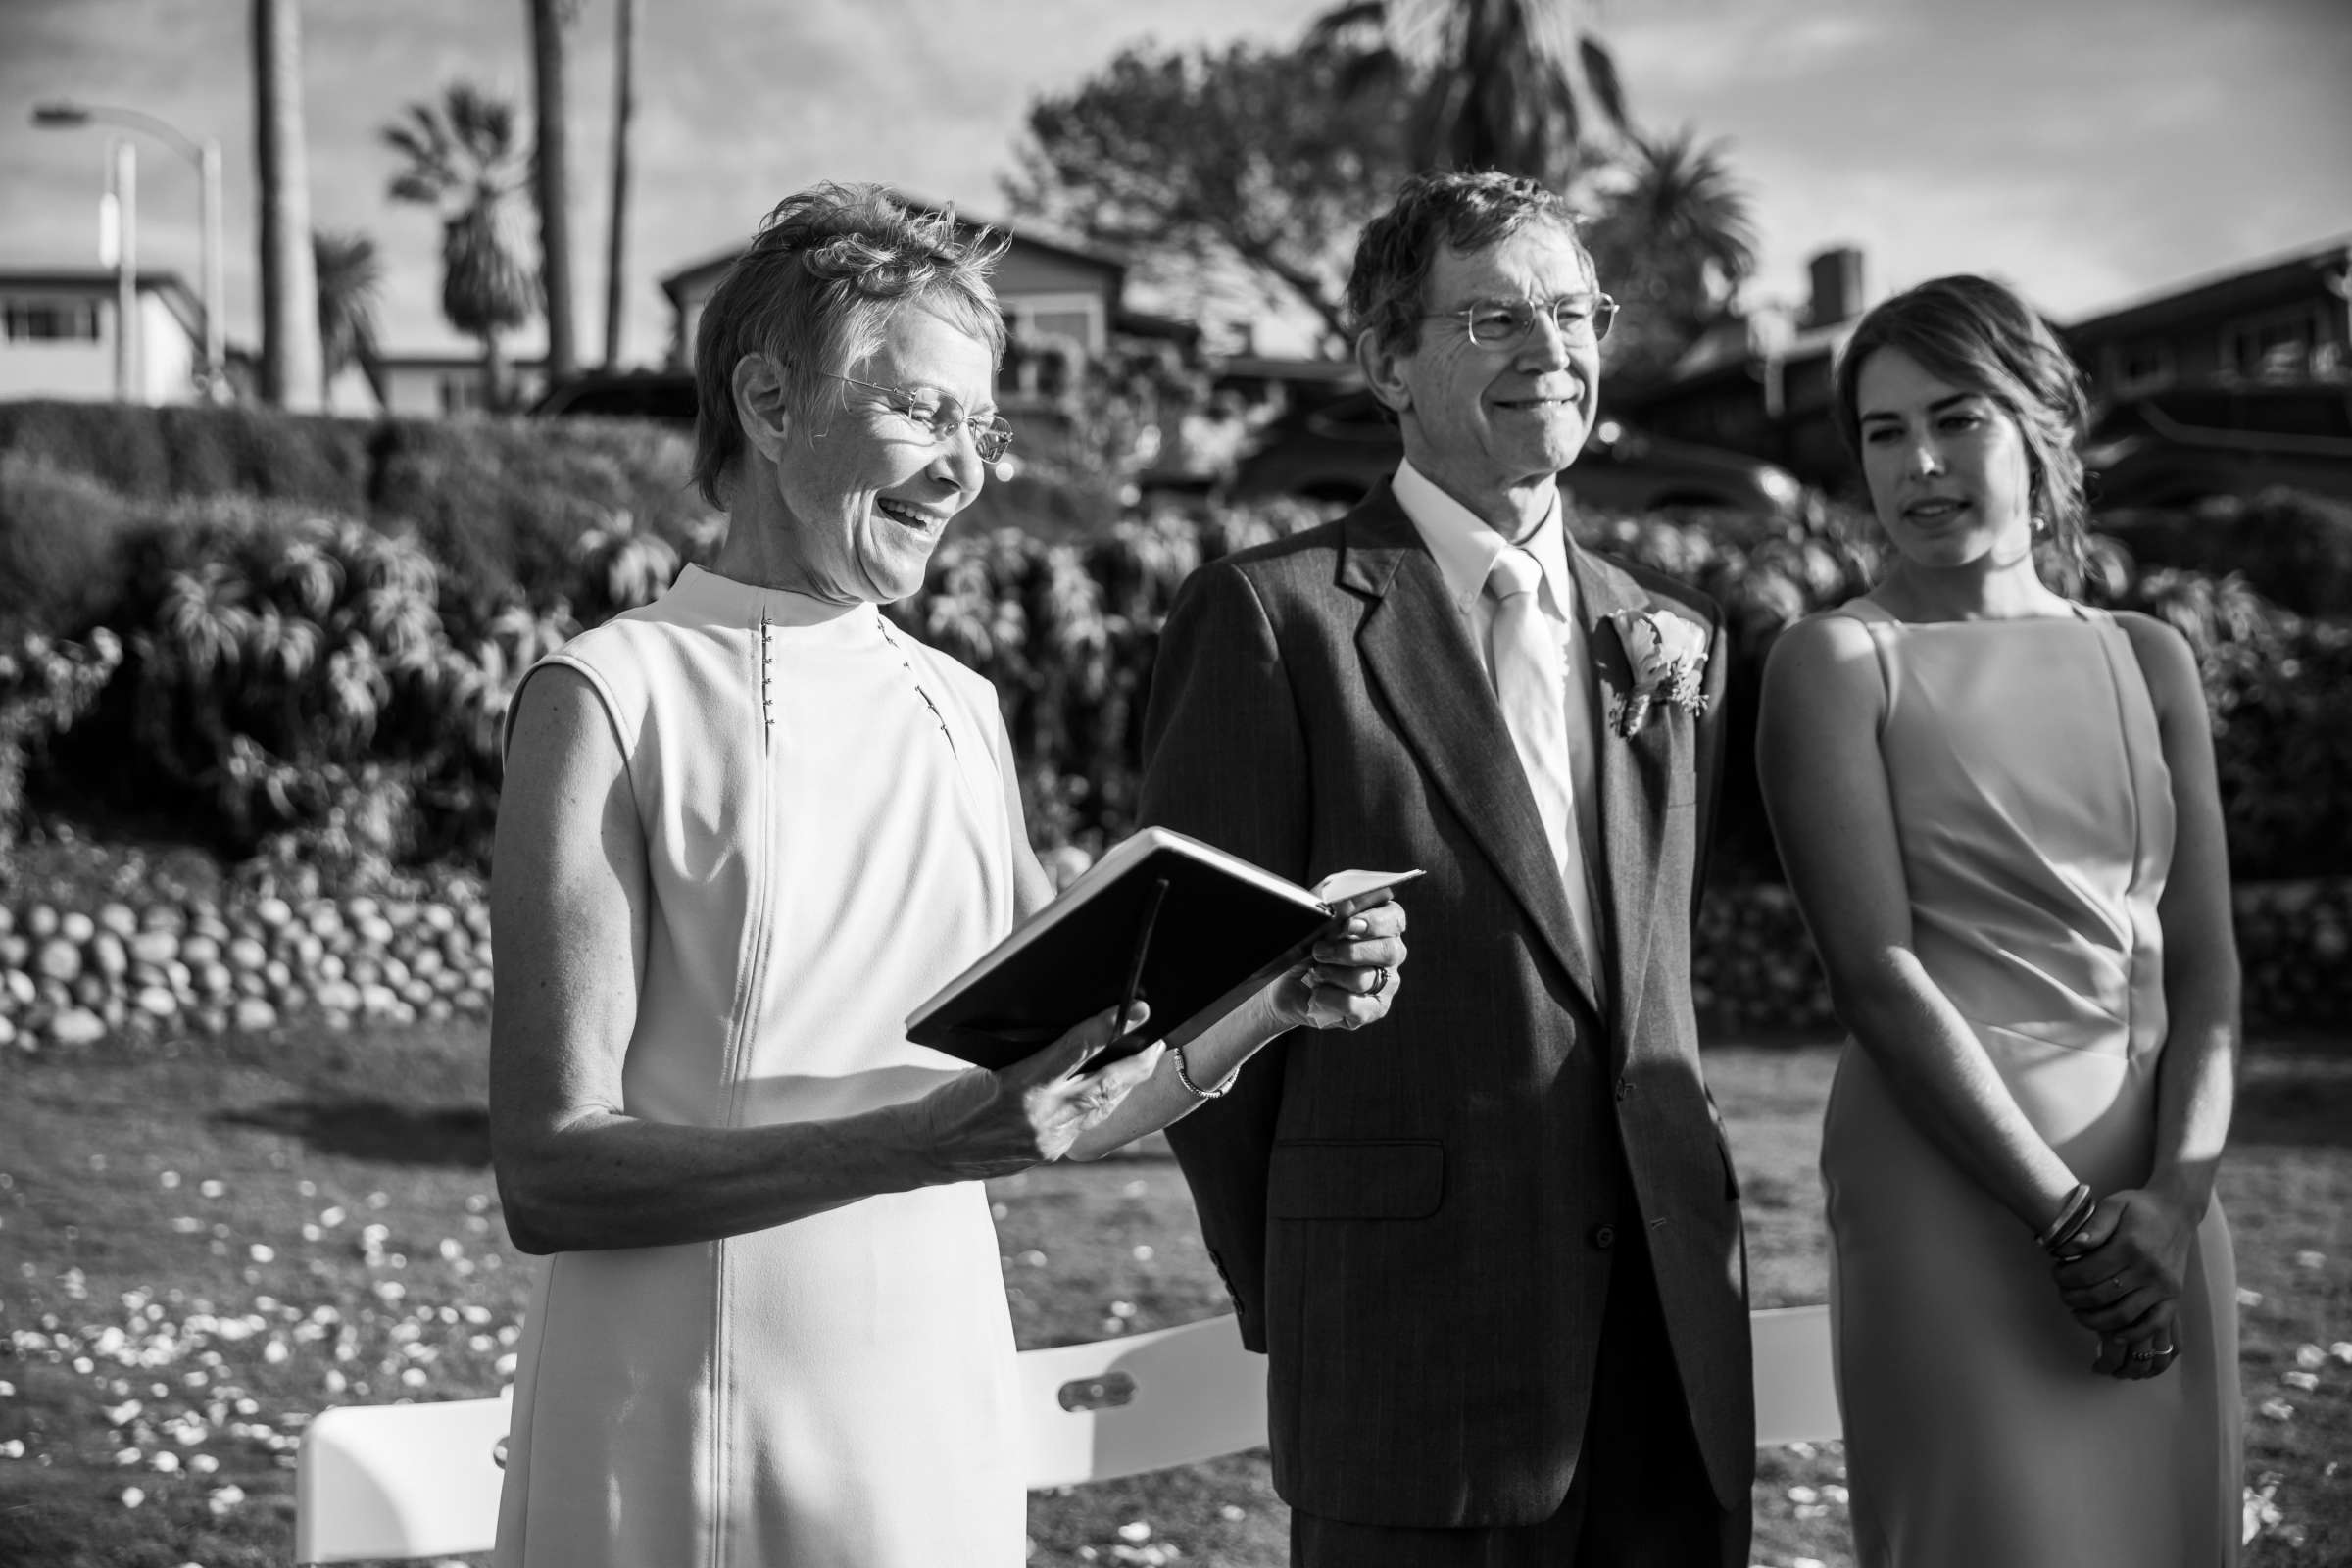 Cuvier Club Wedding, Sierra and Tom Wedding Photo #292495 by True Photography